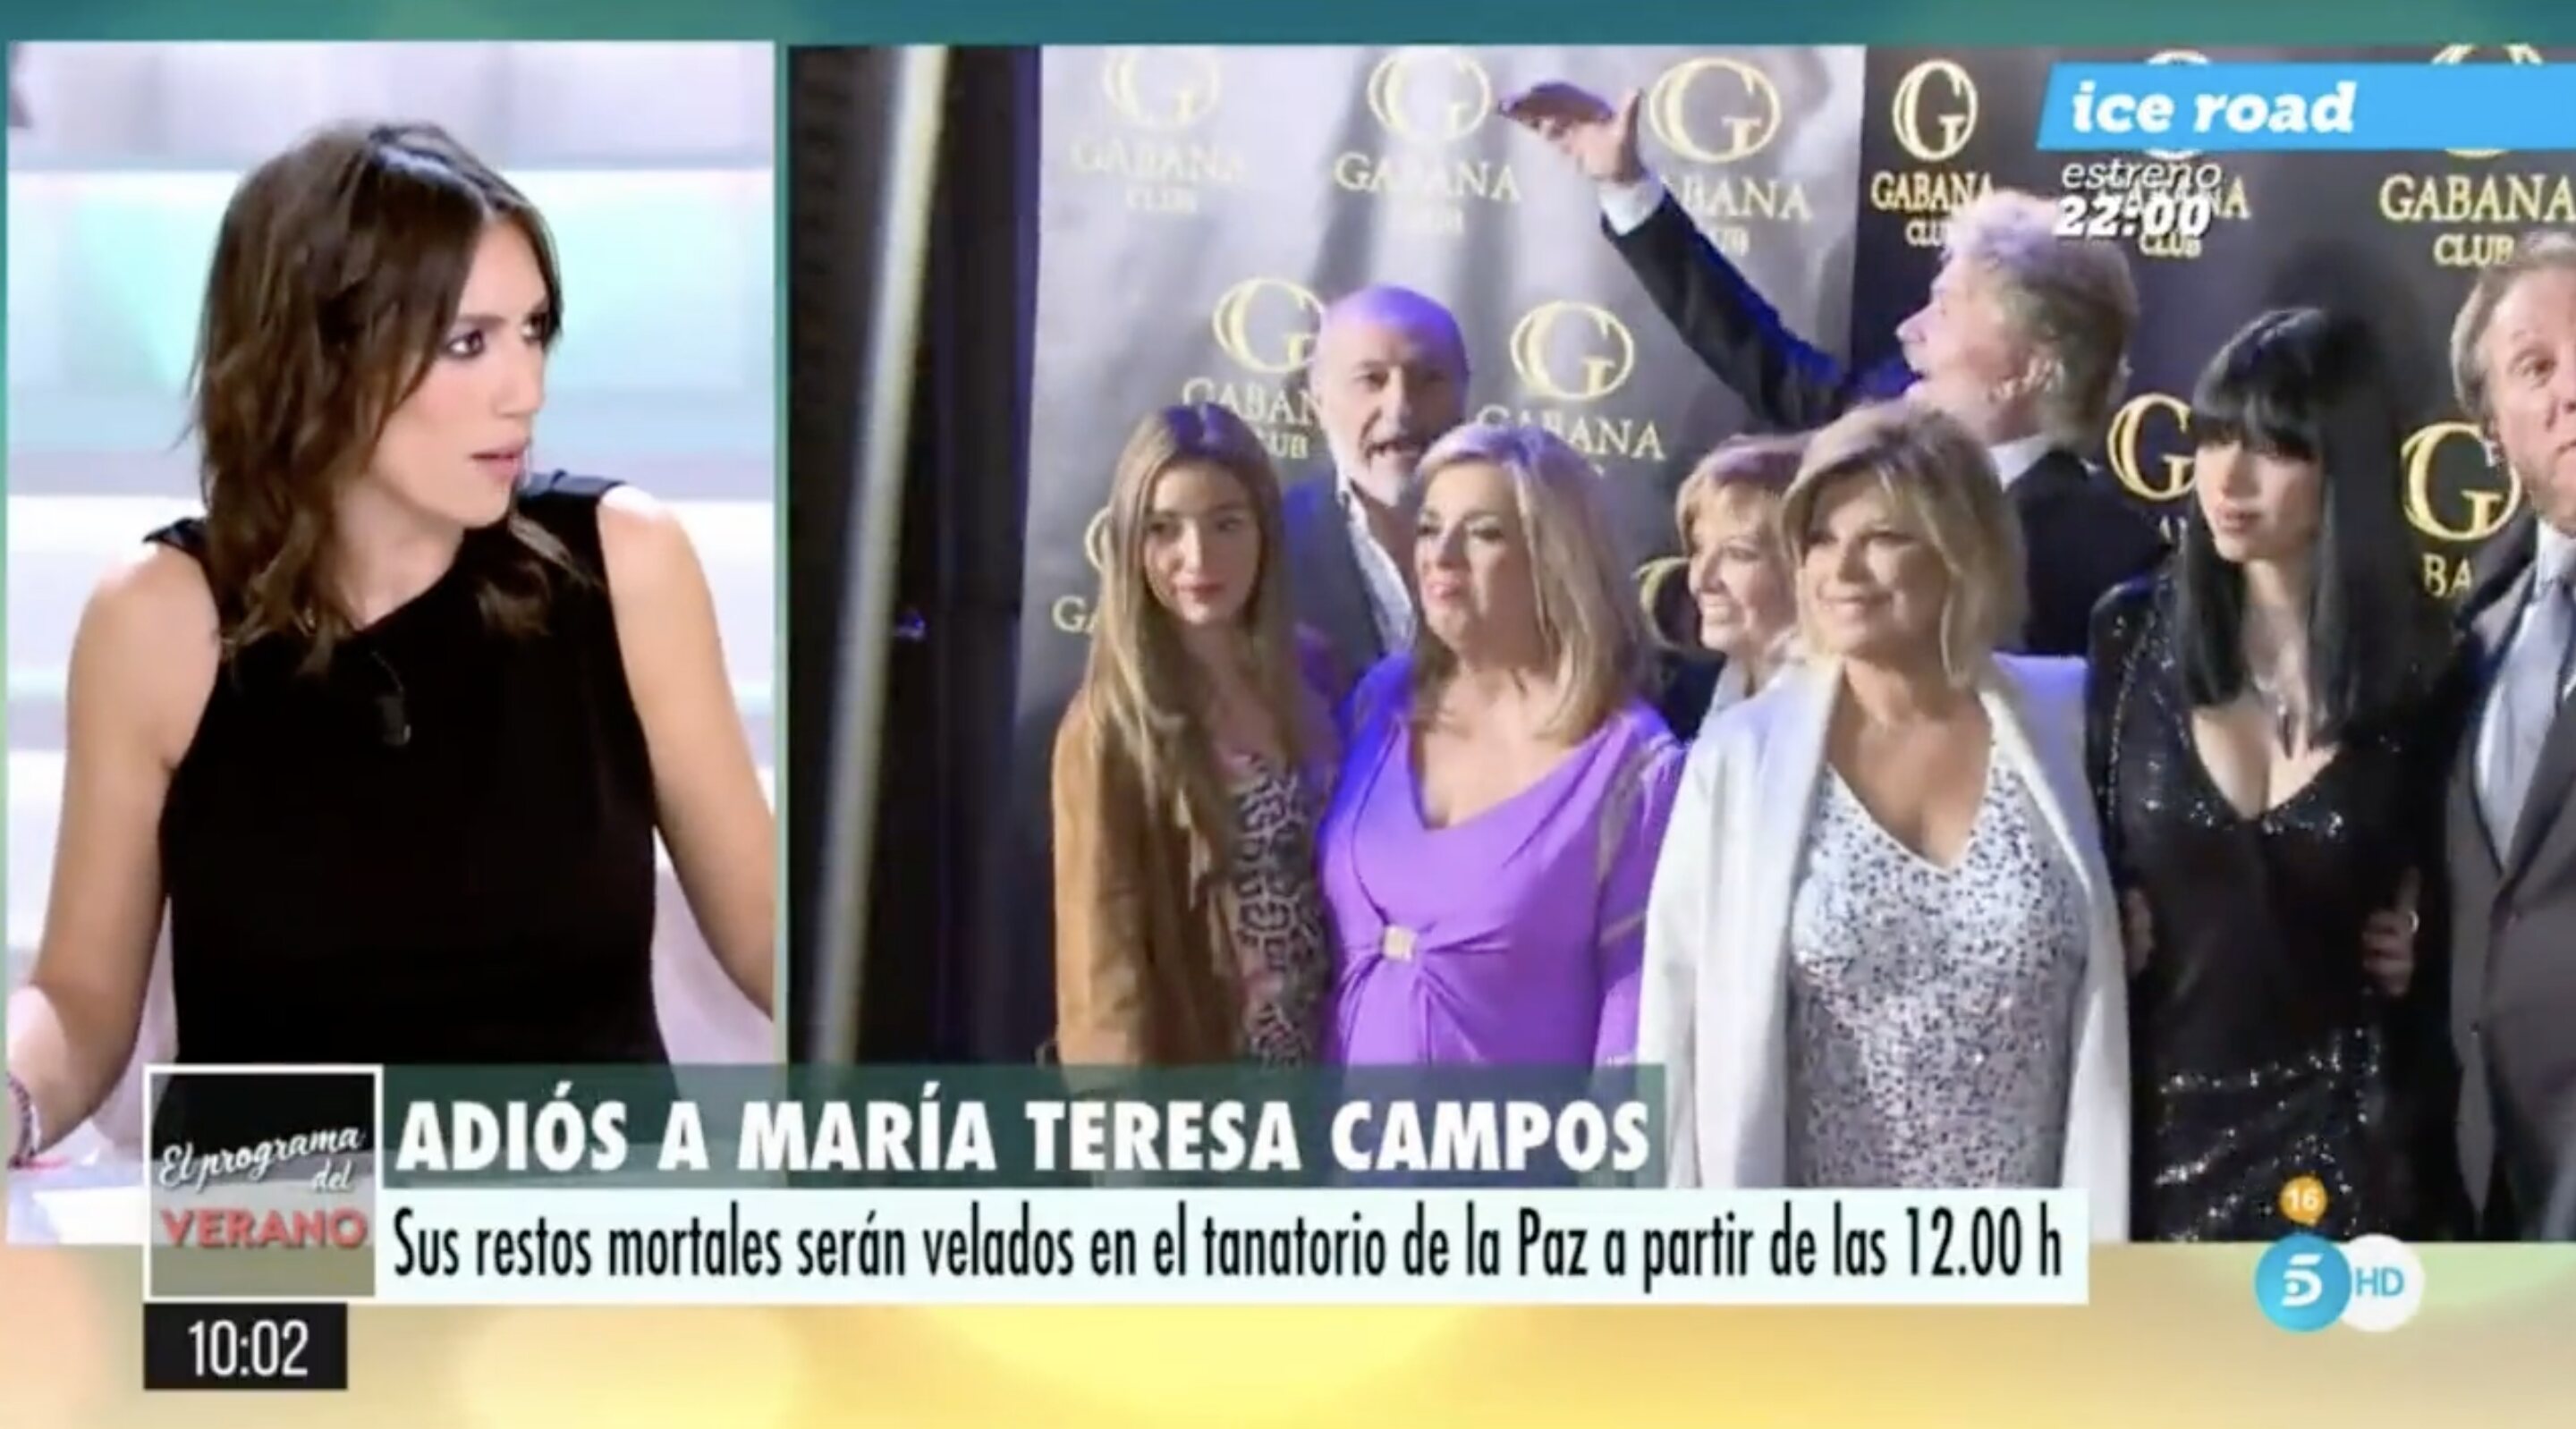 Patricia Pardo destacó que era un comentario totalmente irrespetuoso y fuera de lugar | Foto: Telecinco.es